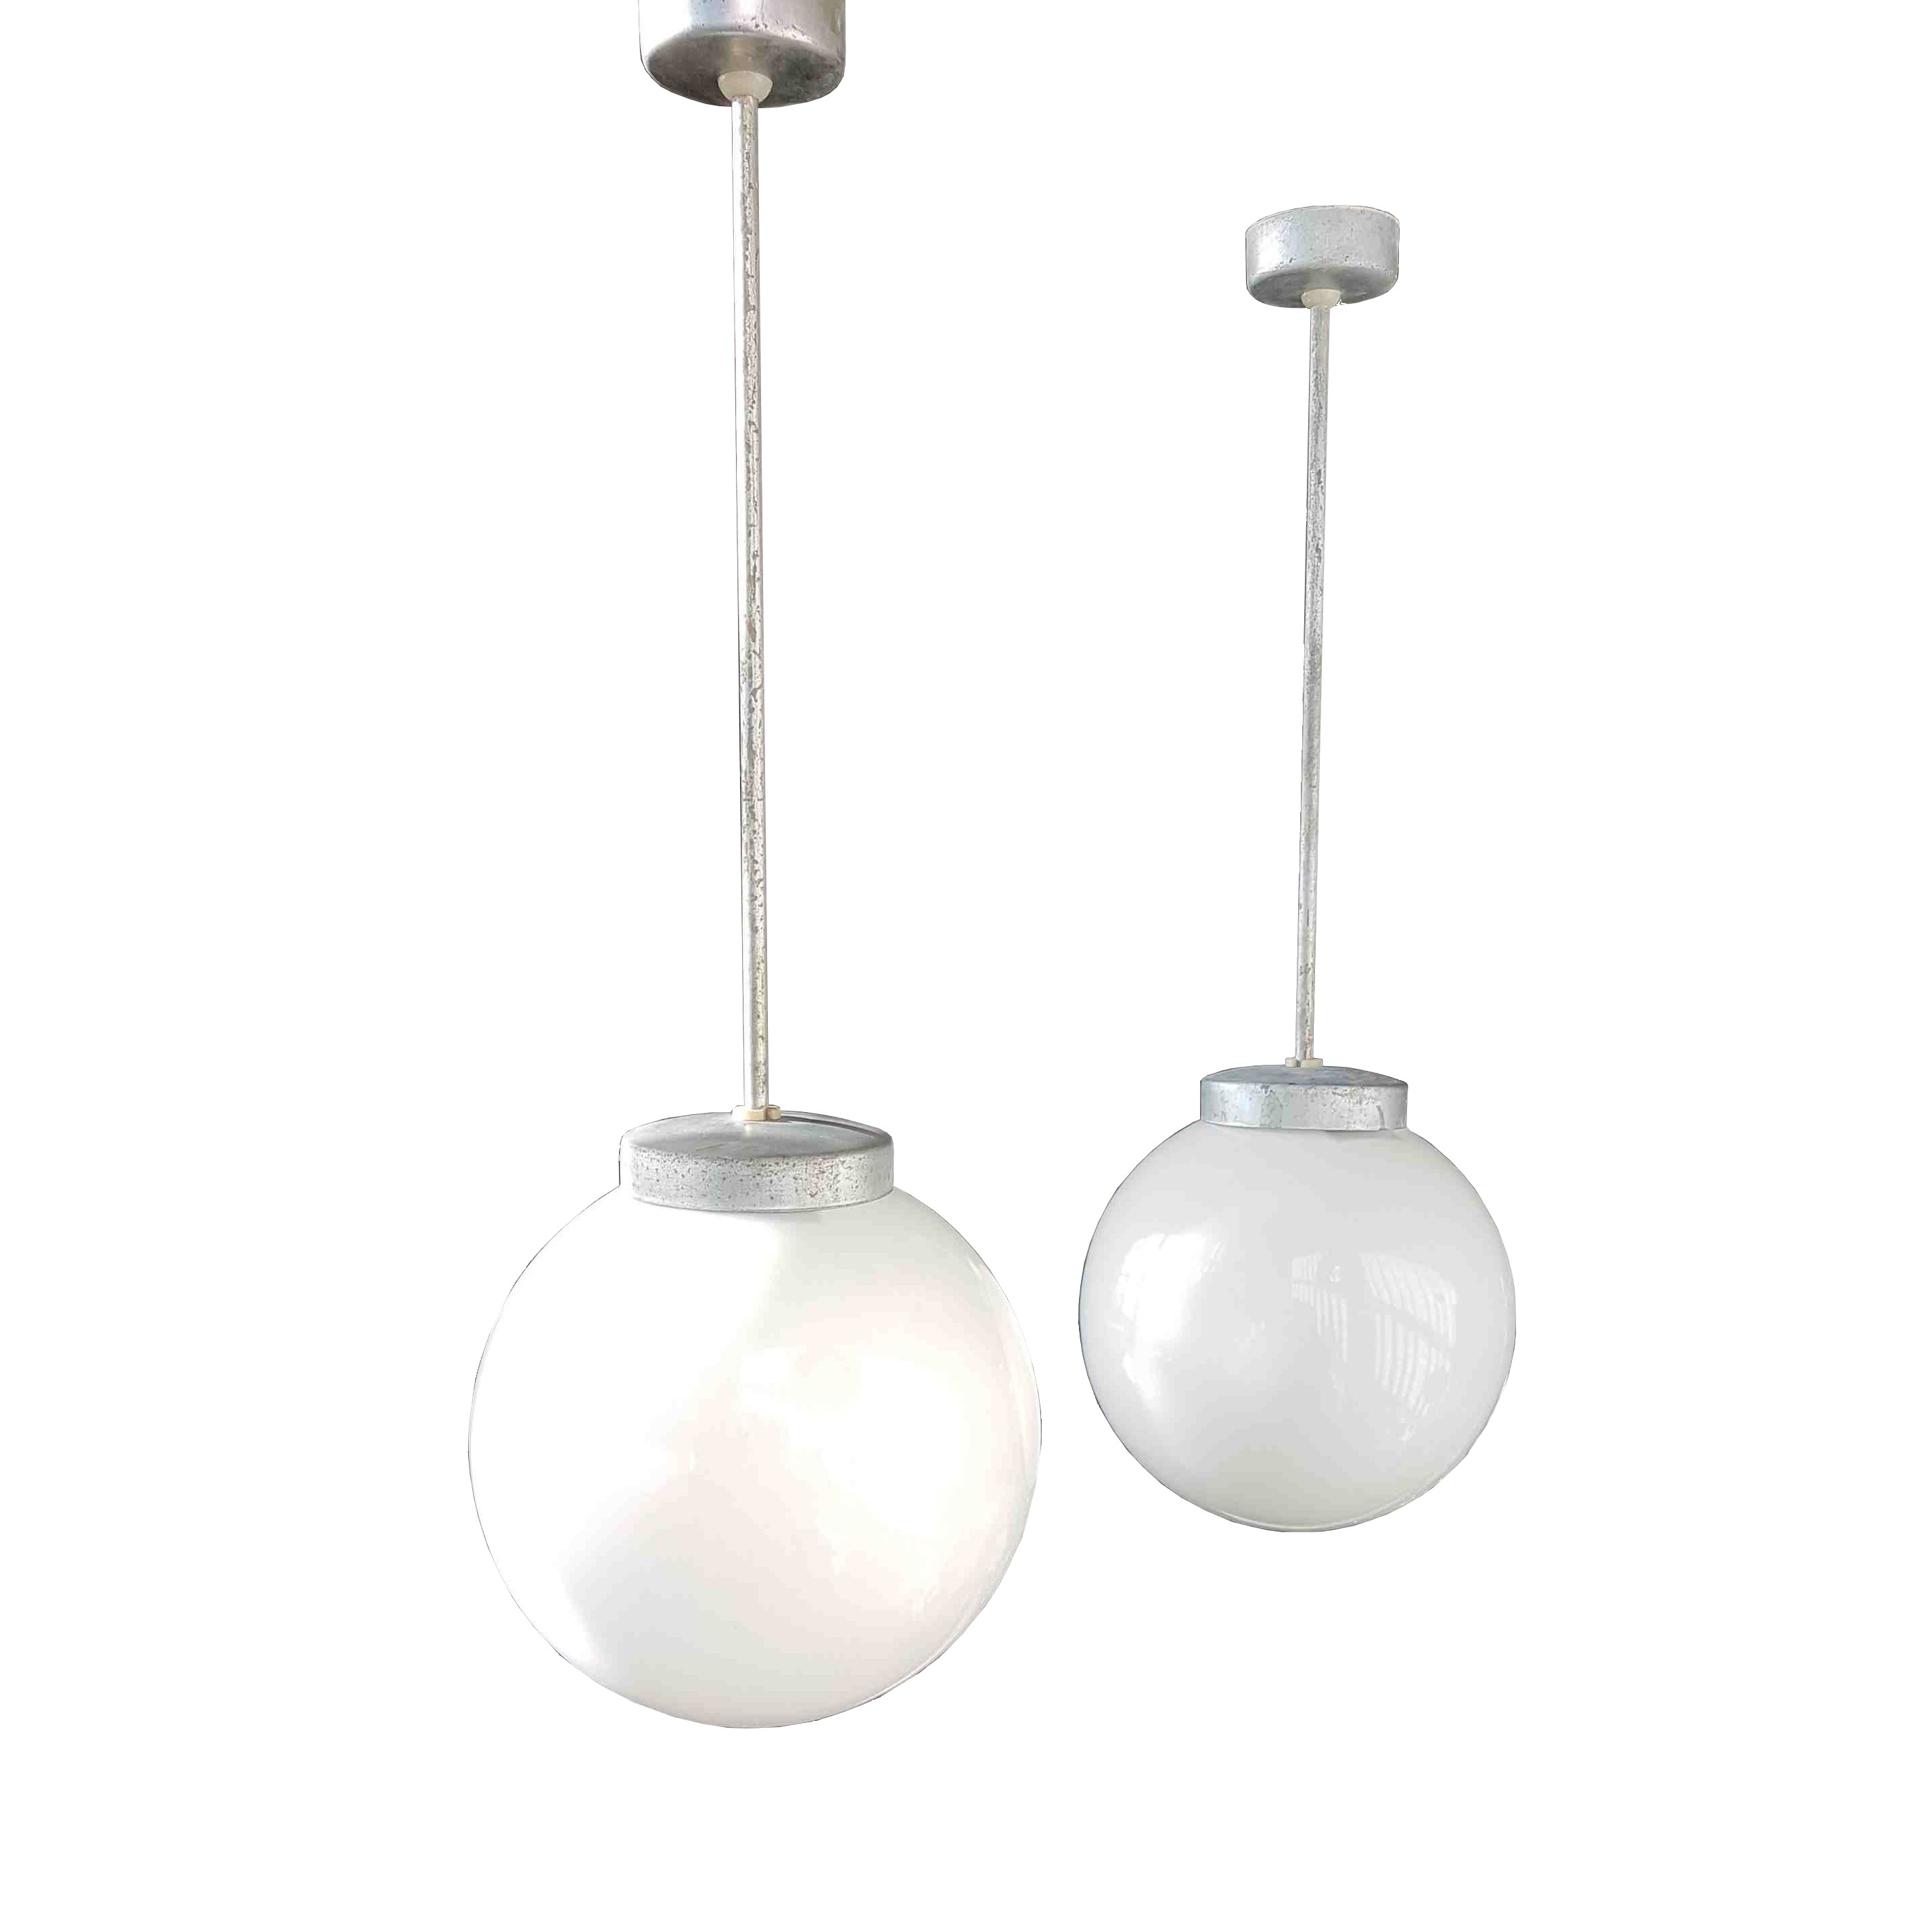 Polskie lampy industrialne loft przemysłowe lampa lofotwa model Ozd-100